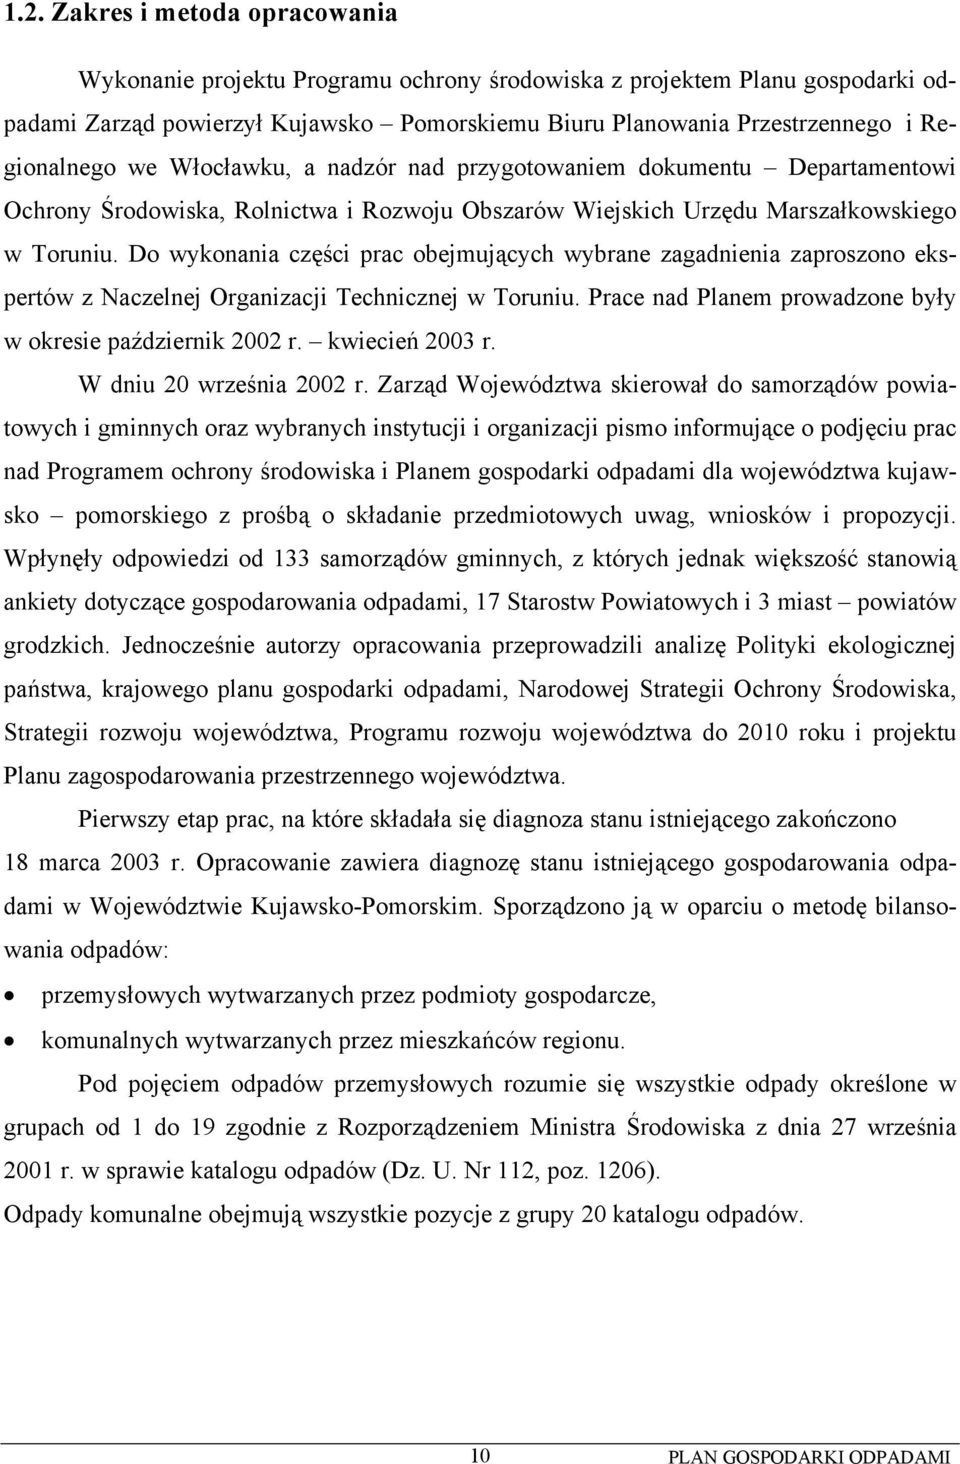 Do wykonania części prac obejmujących wybrane zagadnienia zaproszono ekspertów z Naczelnej Organizacji Technicznej w Toruniu. Prace nad Planem prowadzone były w okresie październik 2002 r.